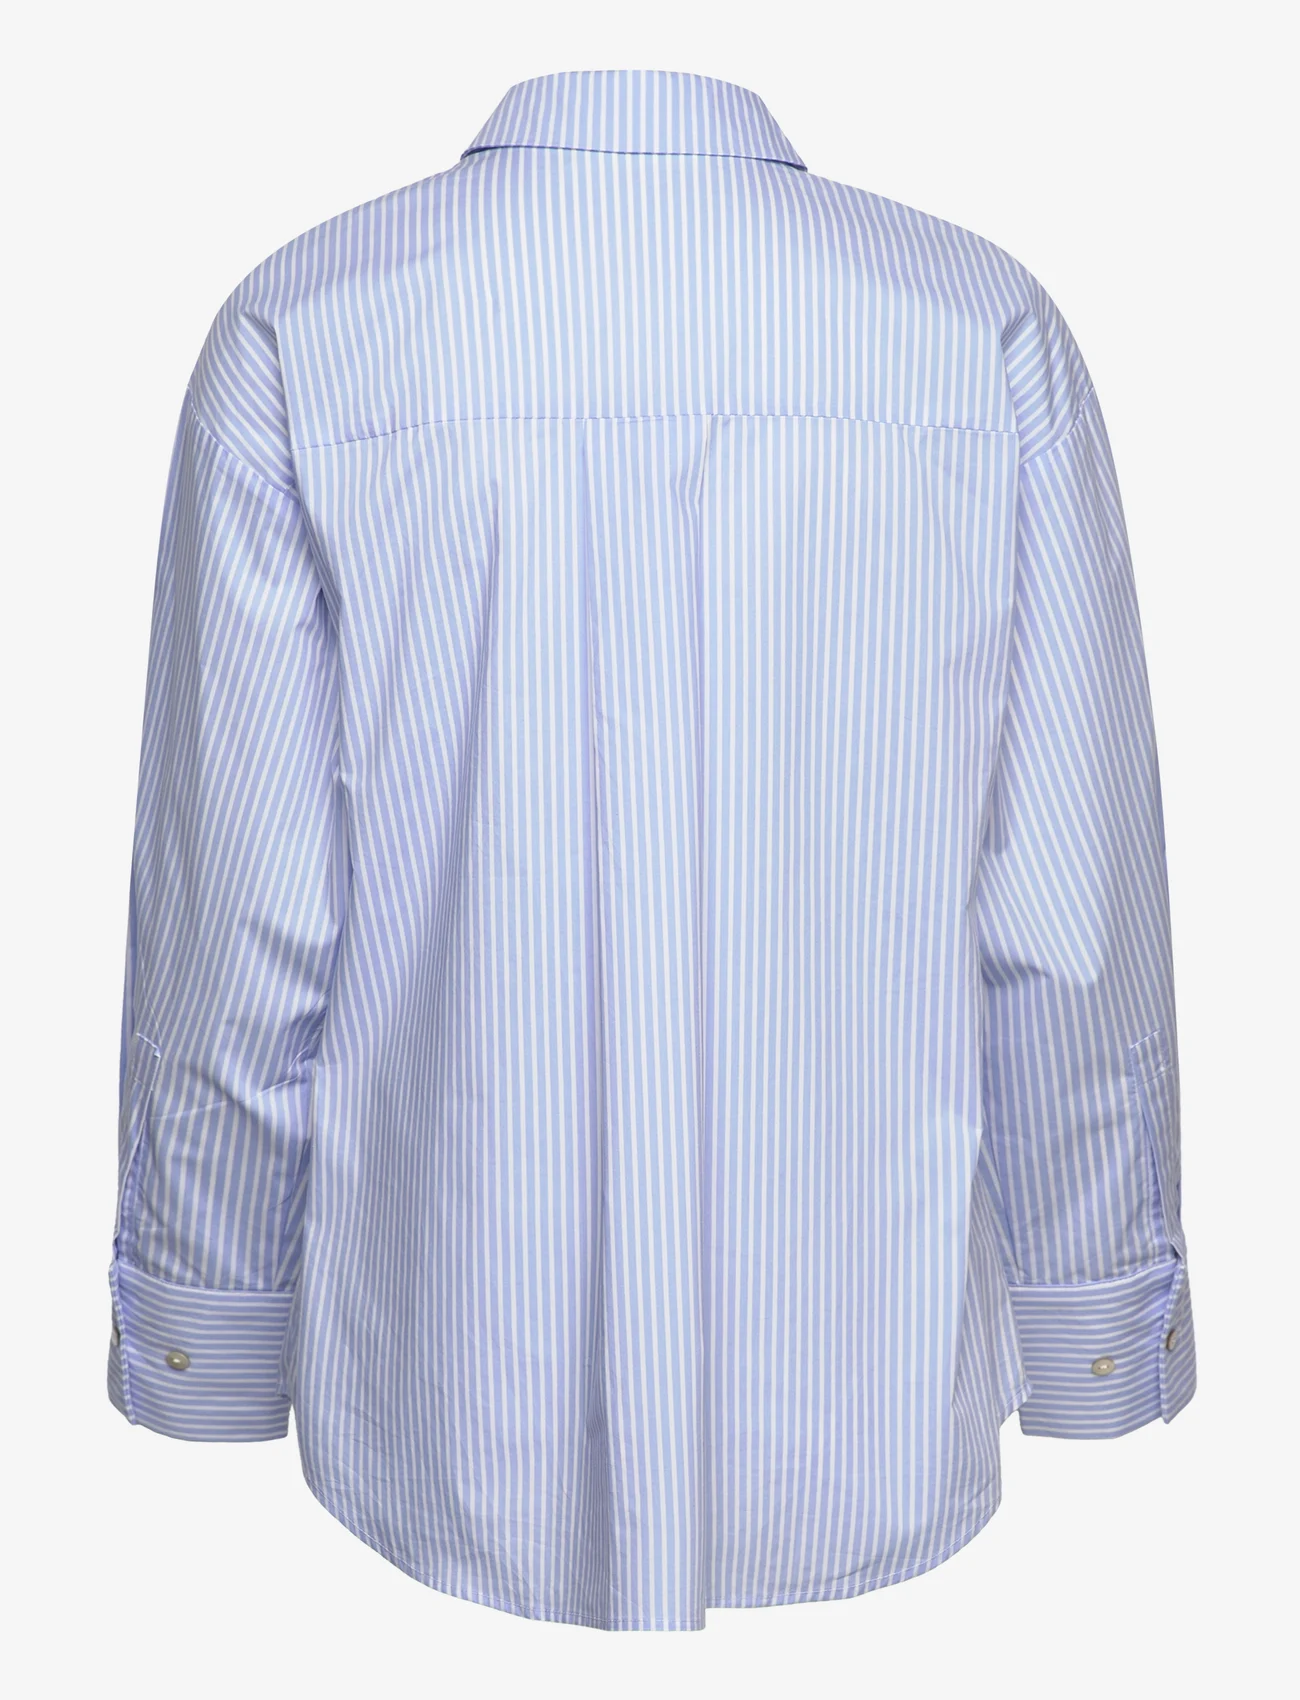 Sofie Schnoor - Shirt - pitkähihaiset paidat - light blue striped - 1